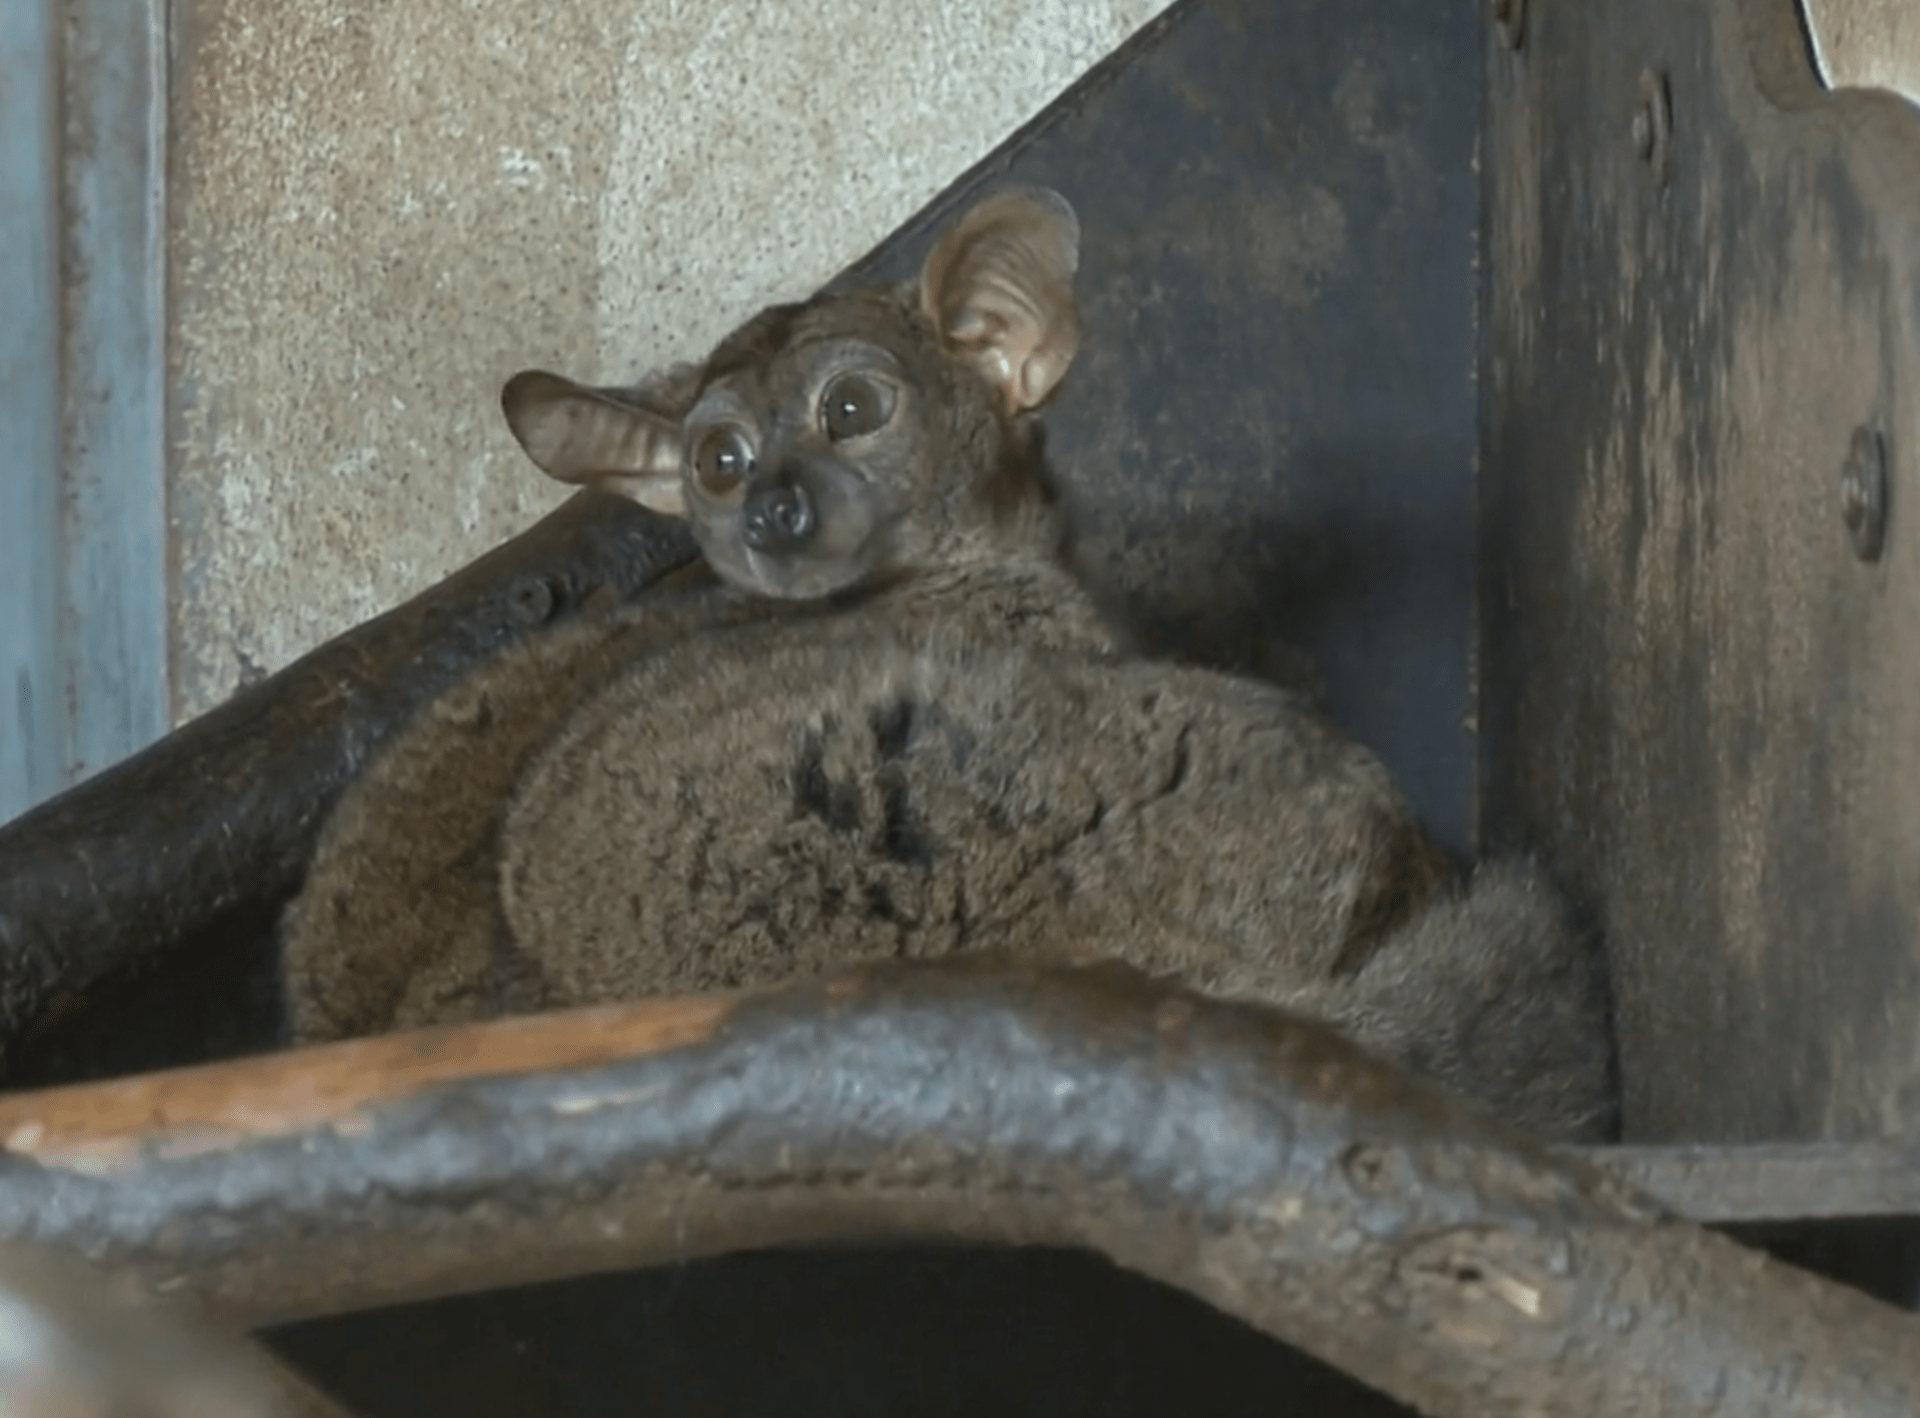 Jihlavská Zoo nabízí noční prohlídky. Vidět při nich můžete živočichy, kteří přes den obvykle spí nebo se neradi ukazují